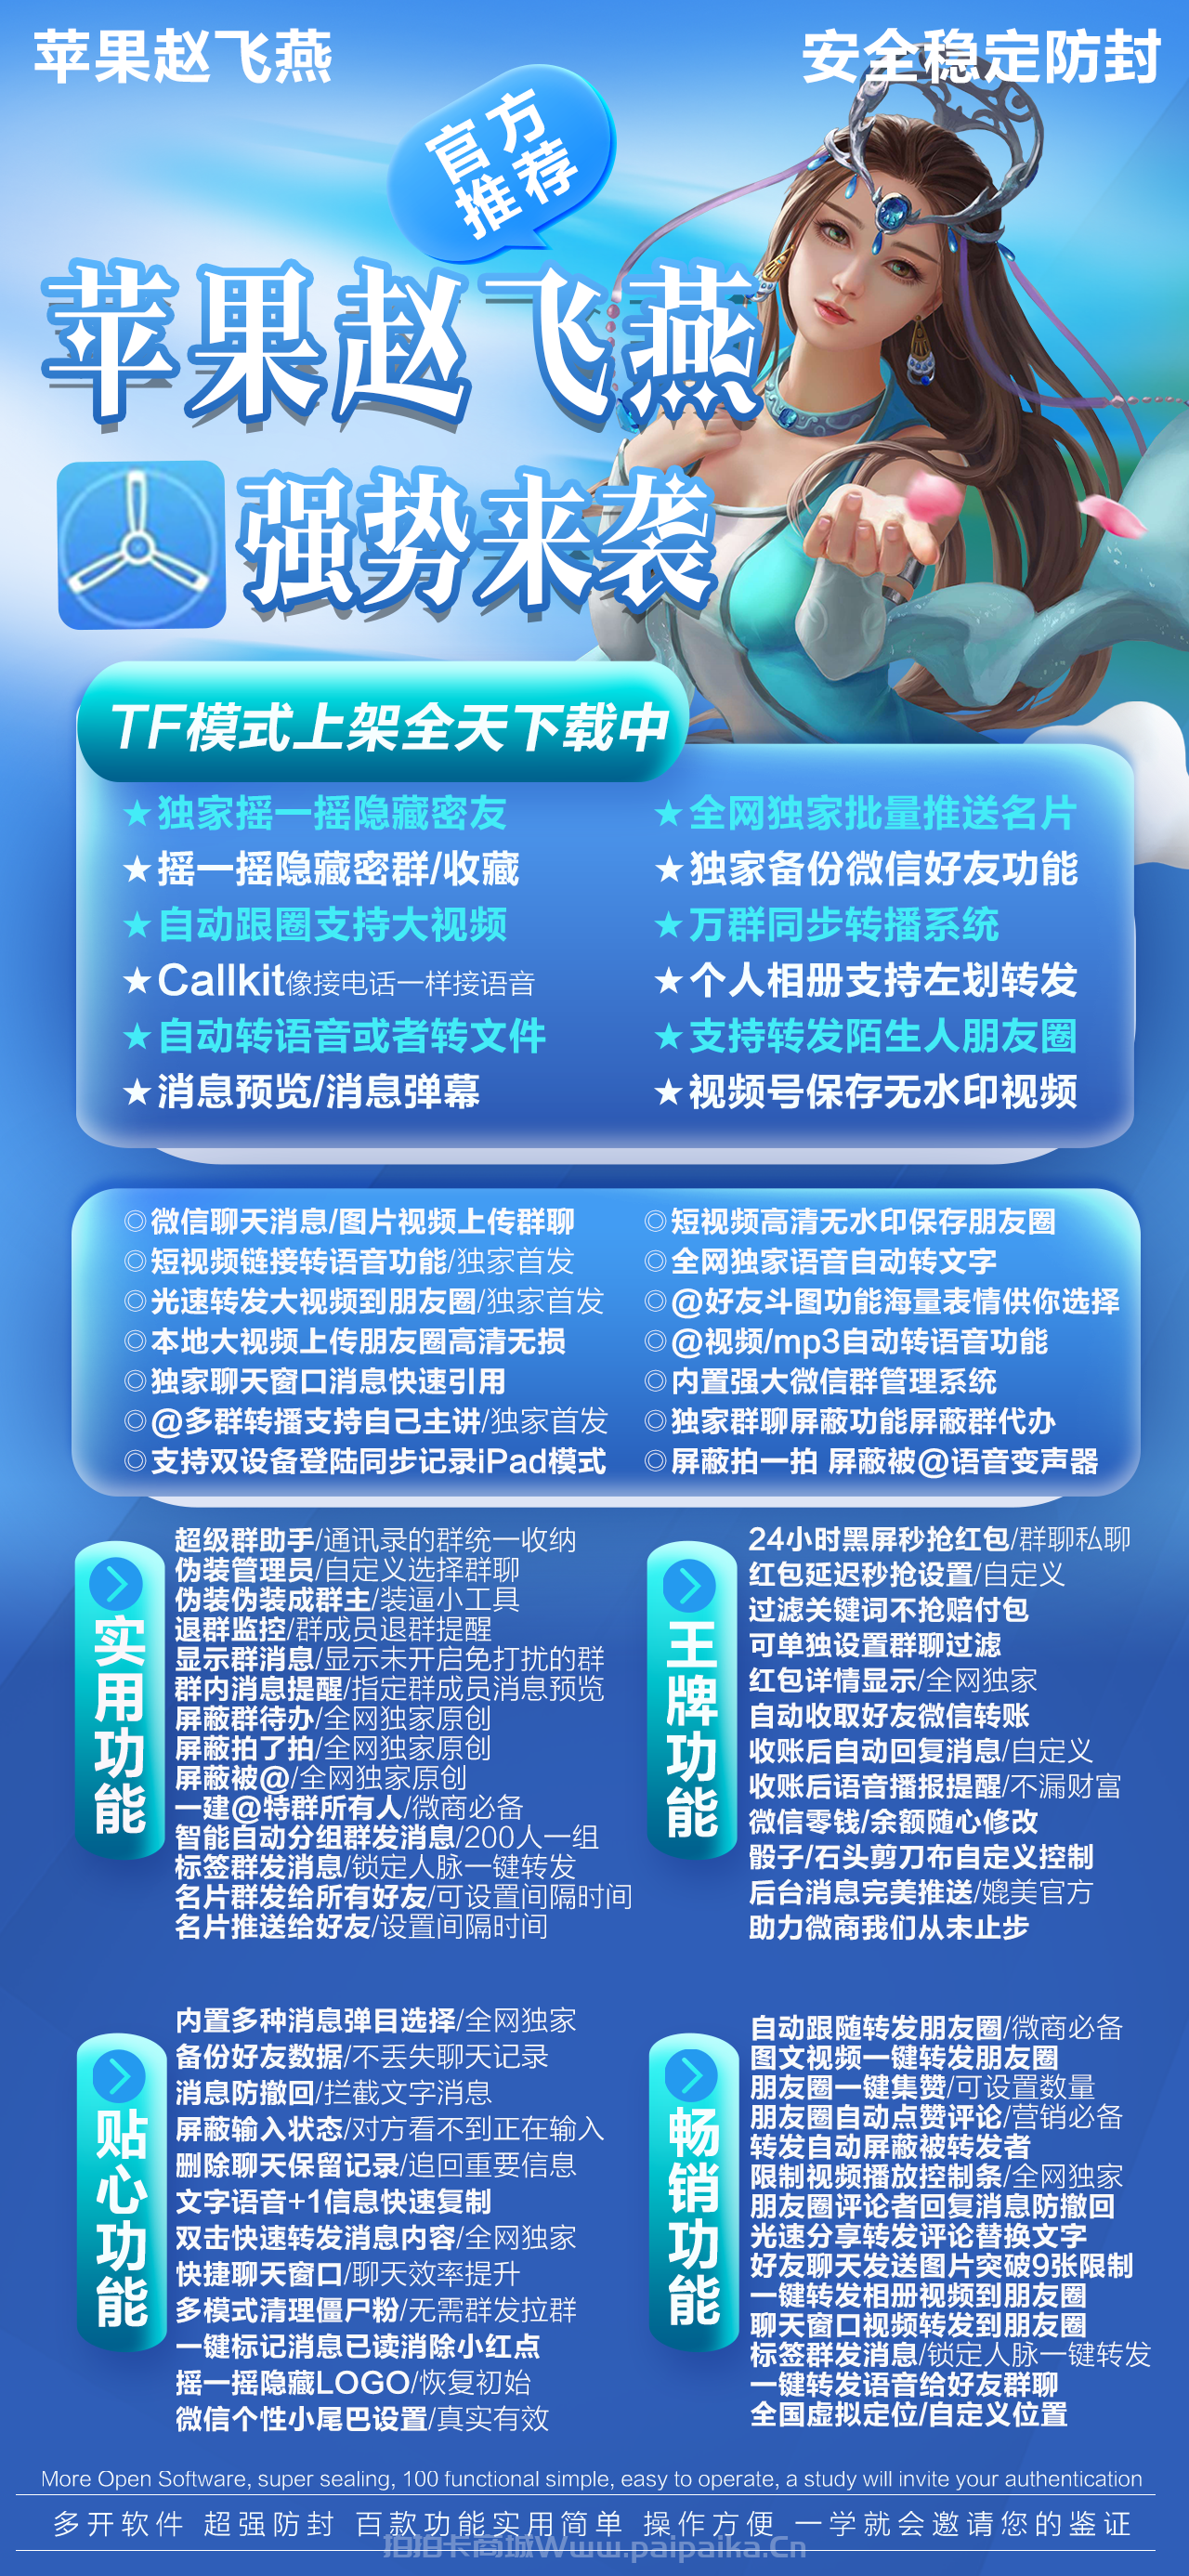 苹果赵飞燕官网-激活码购买以及下载-TF上架（赵子龙同款）042版本内部兑换模式